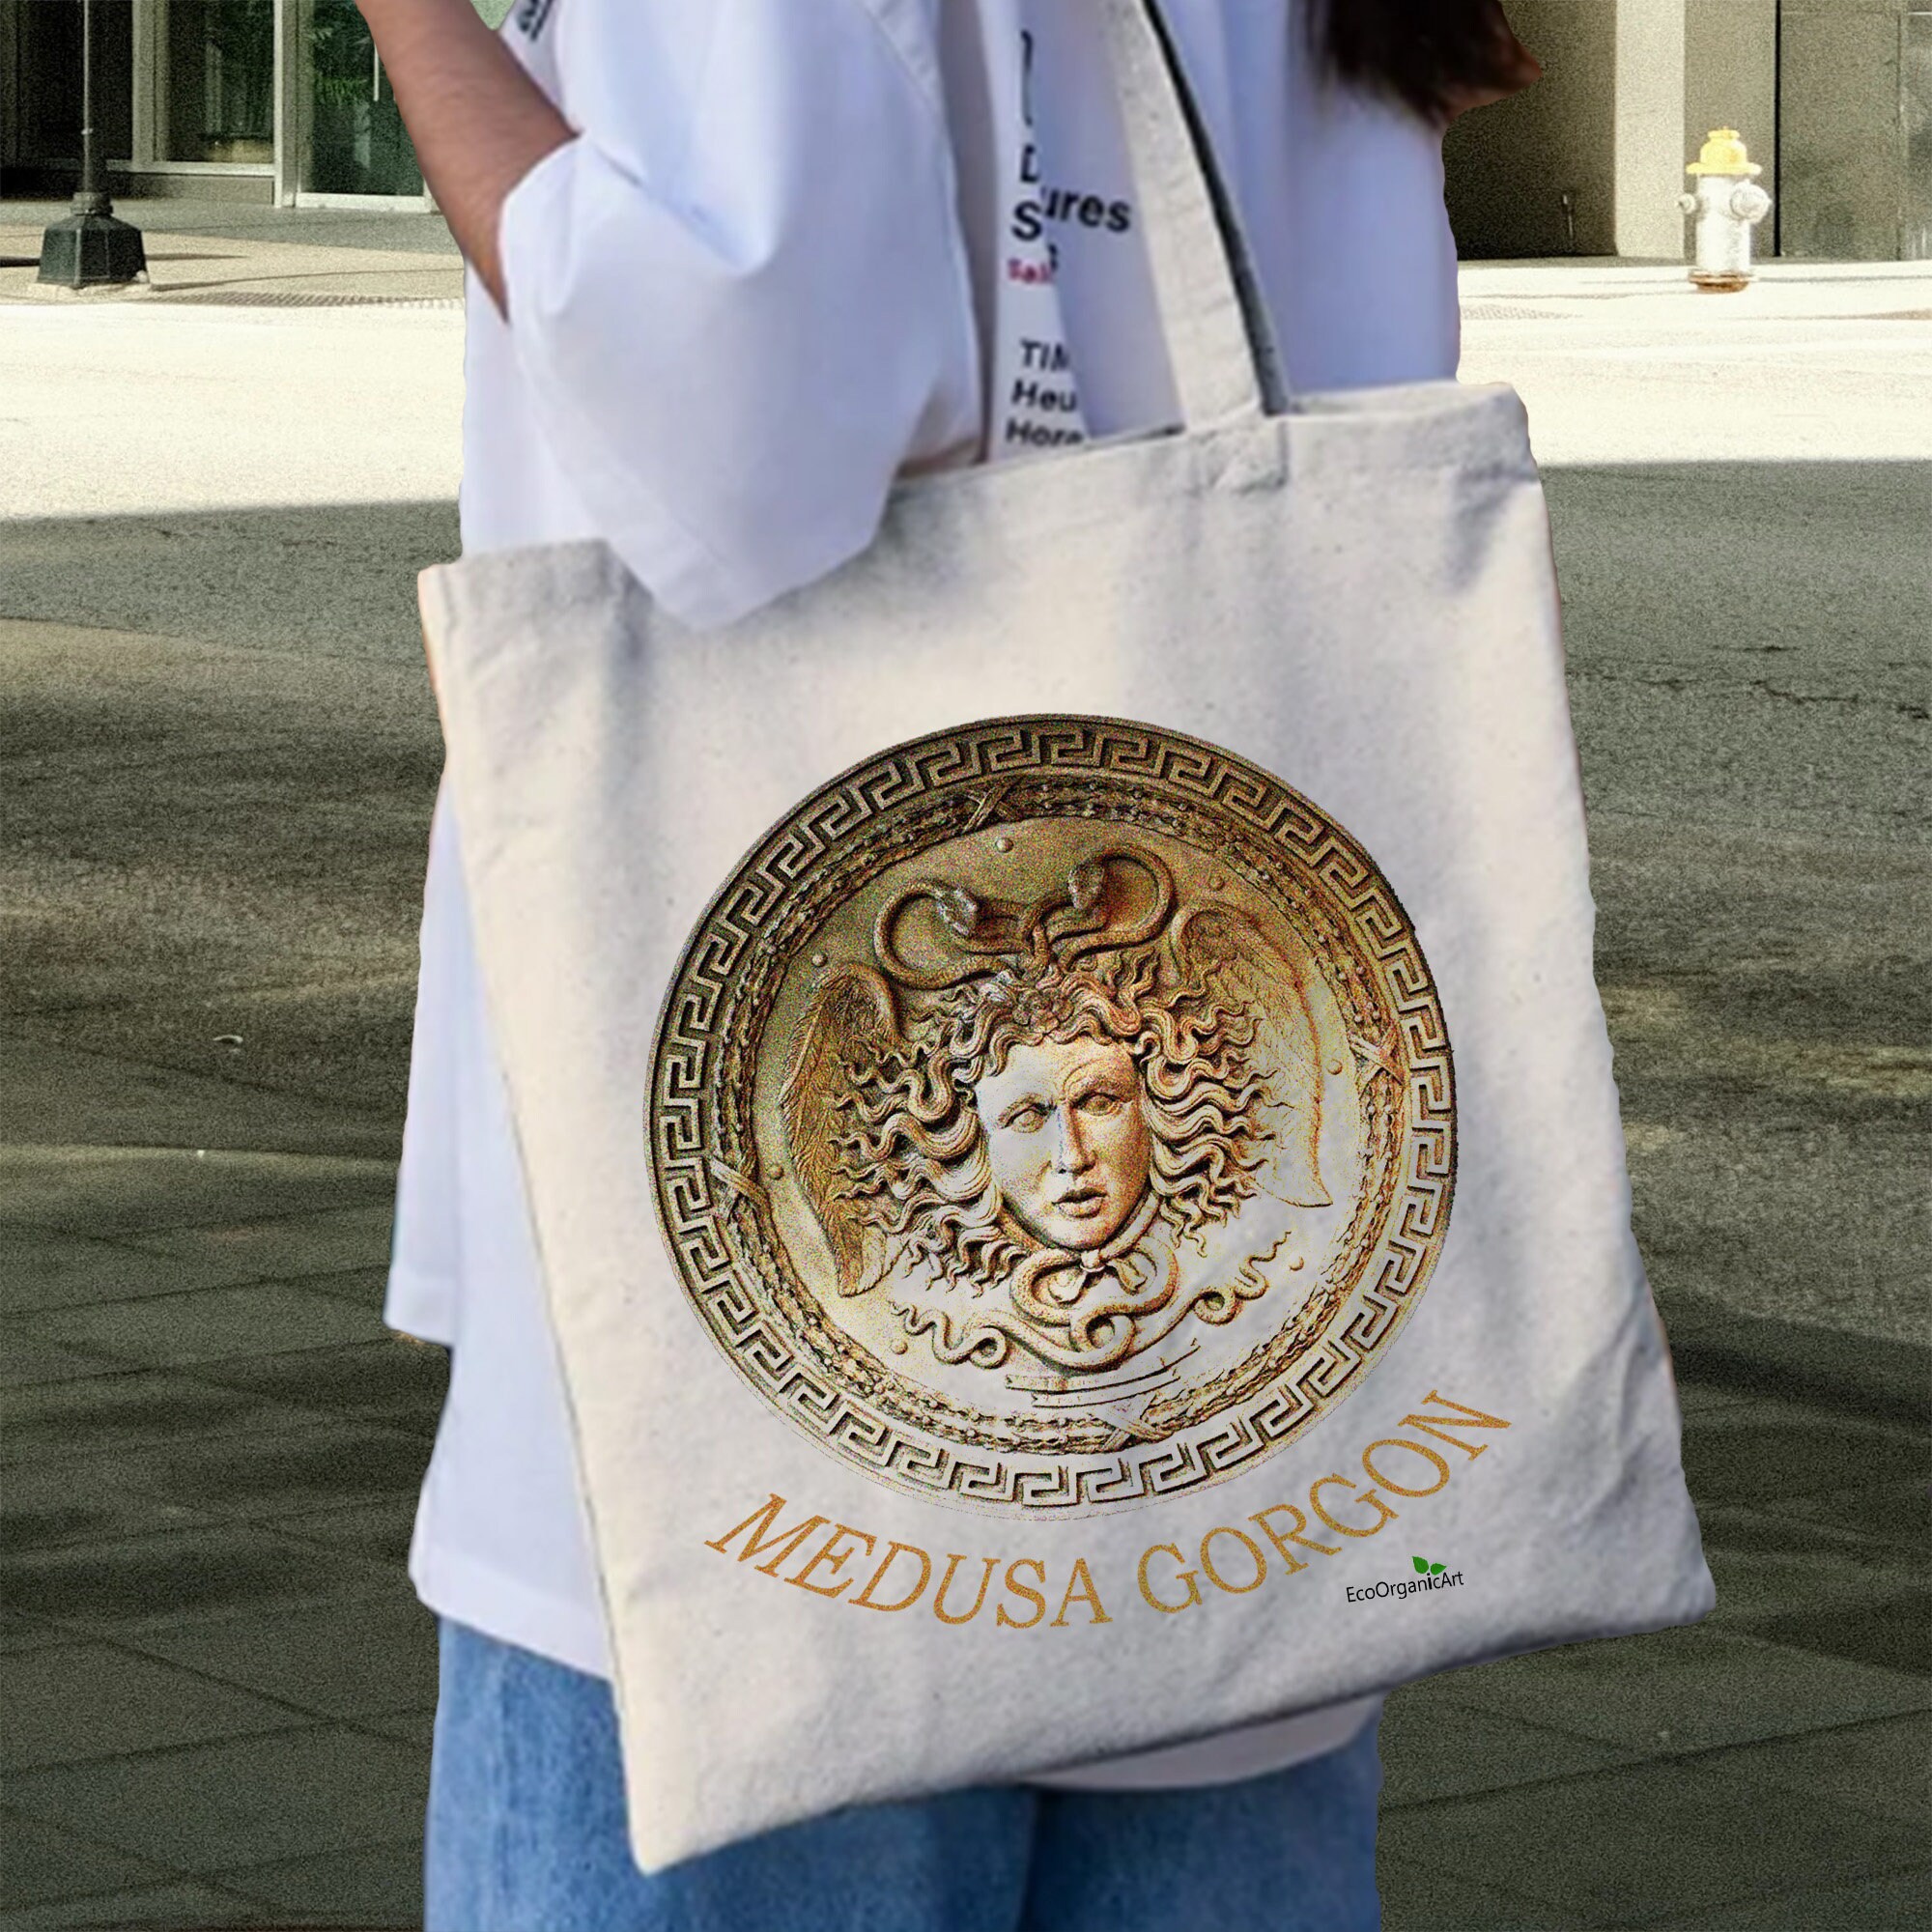 Versace La Medusa Large Cotton-blend Tote Bag in Natural